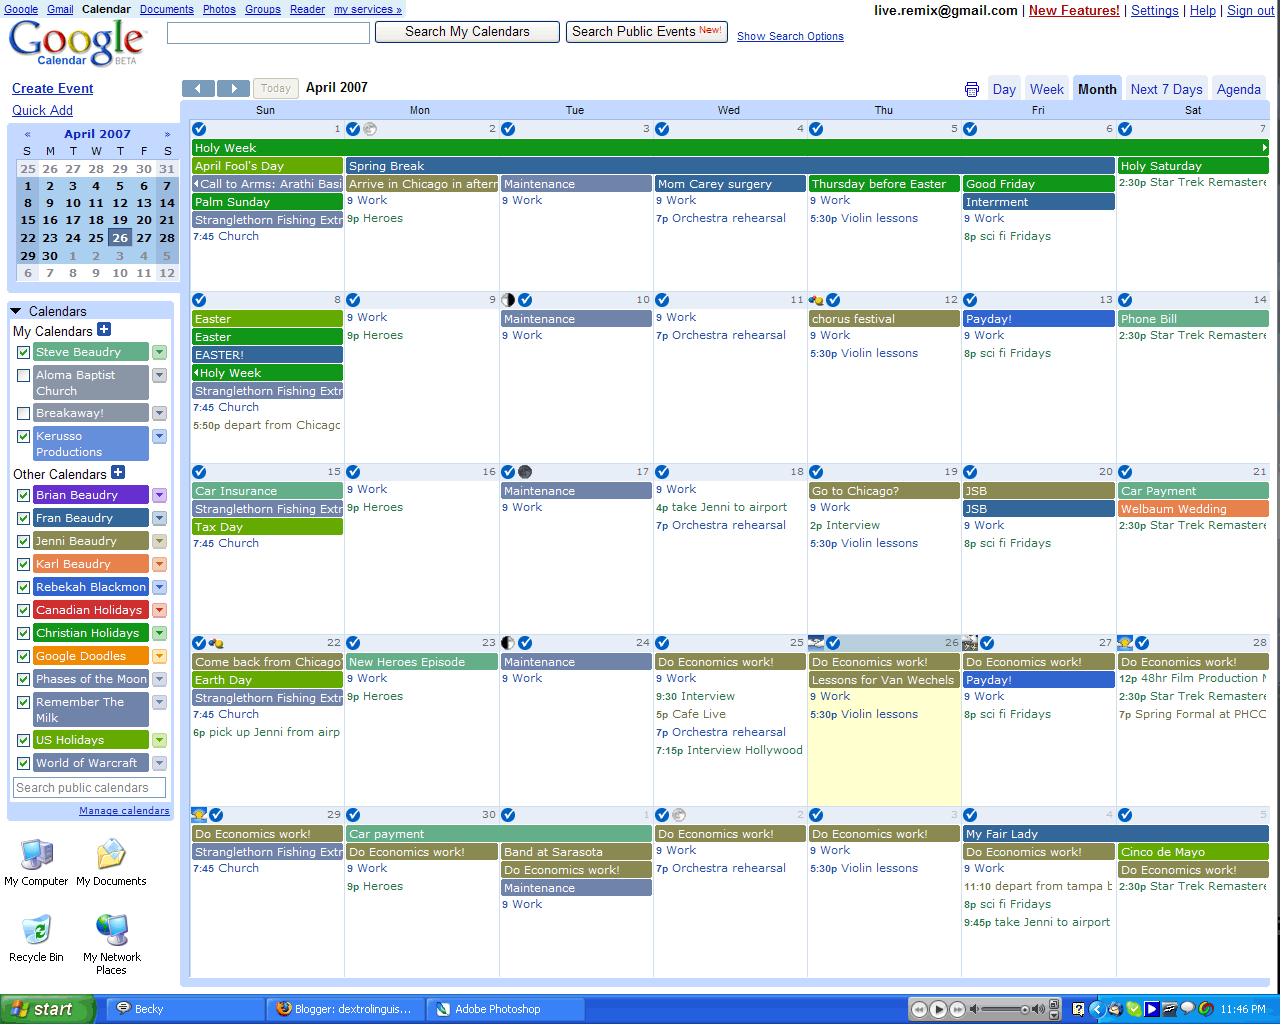 Google Sheets Marketing Calendar Template